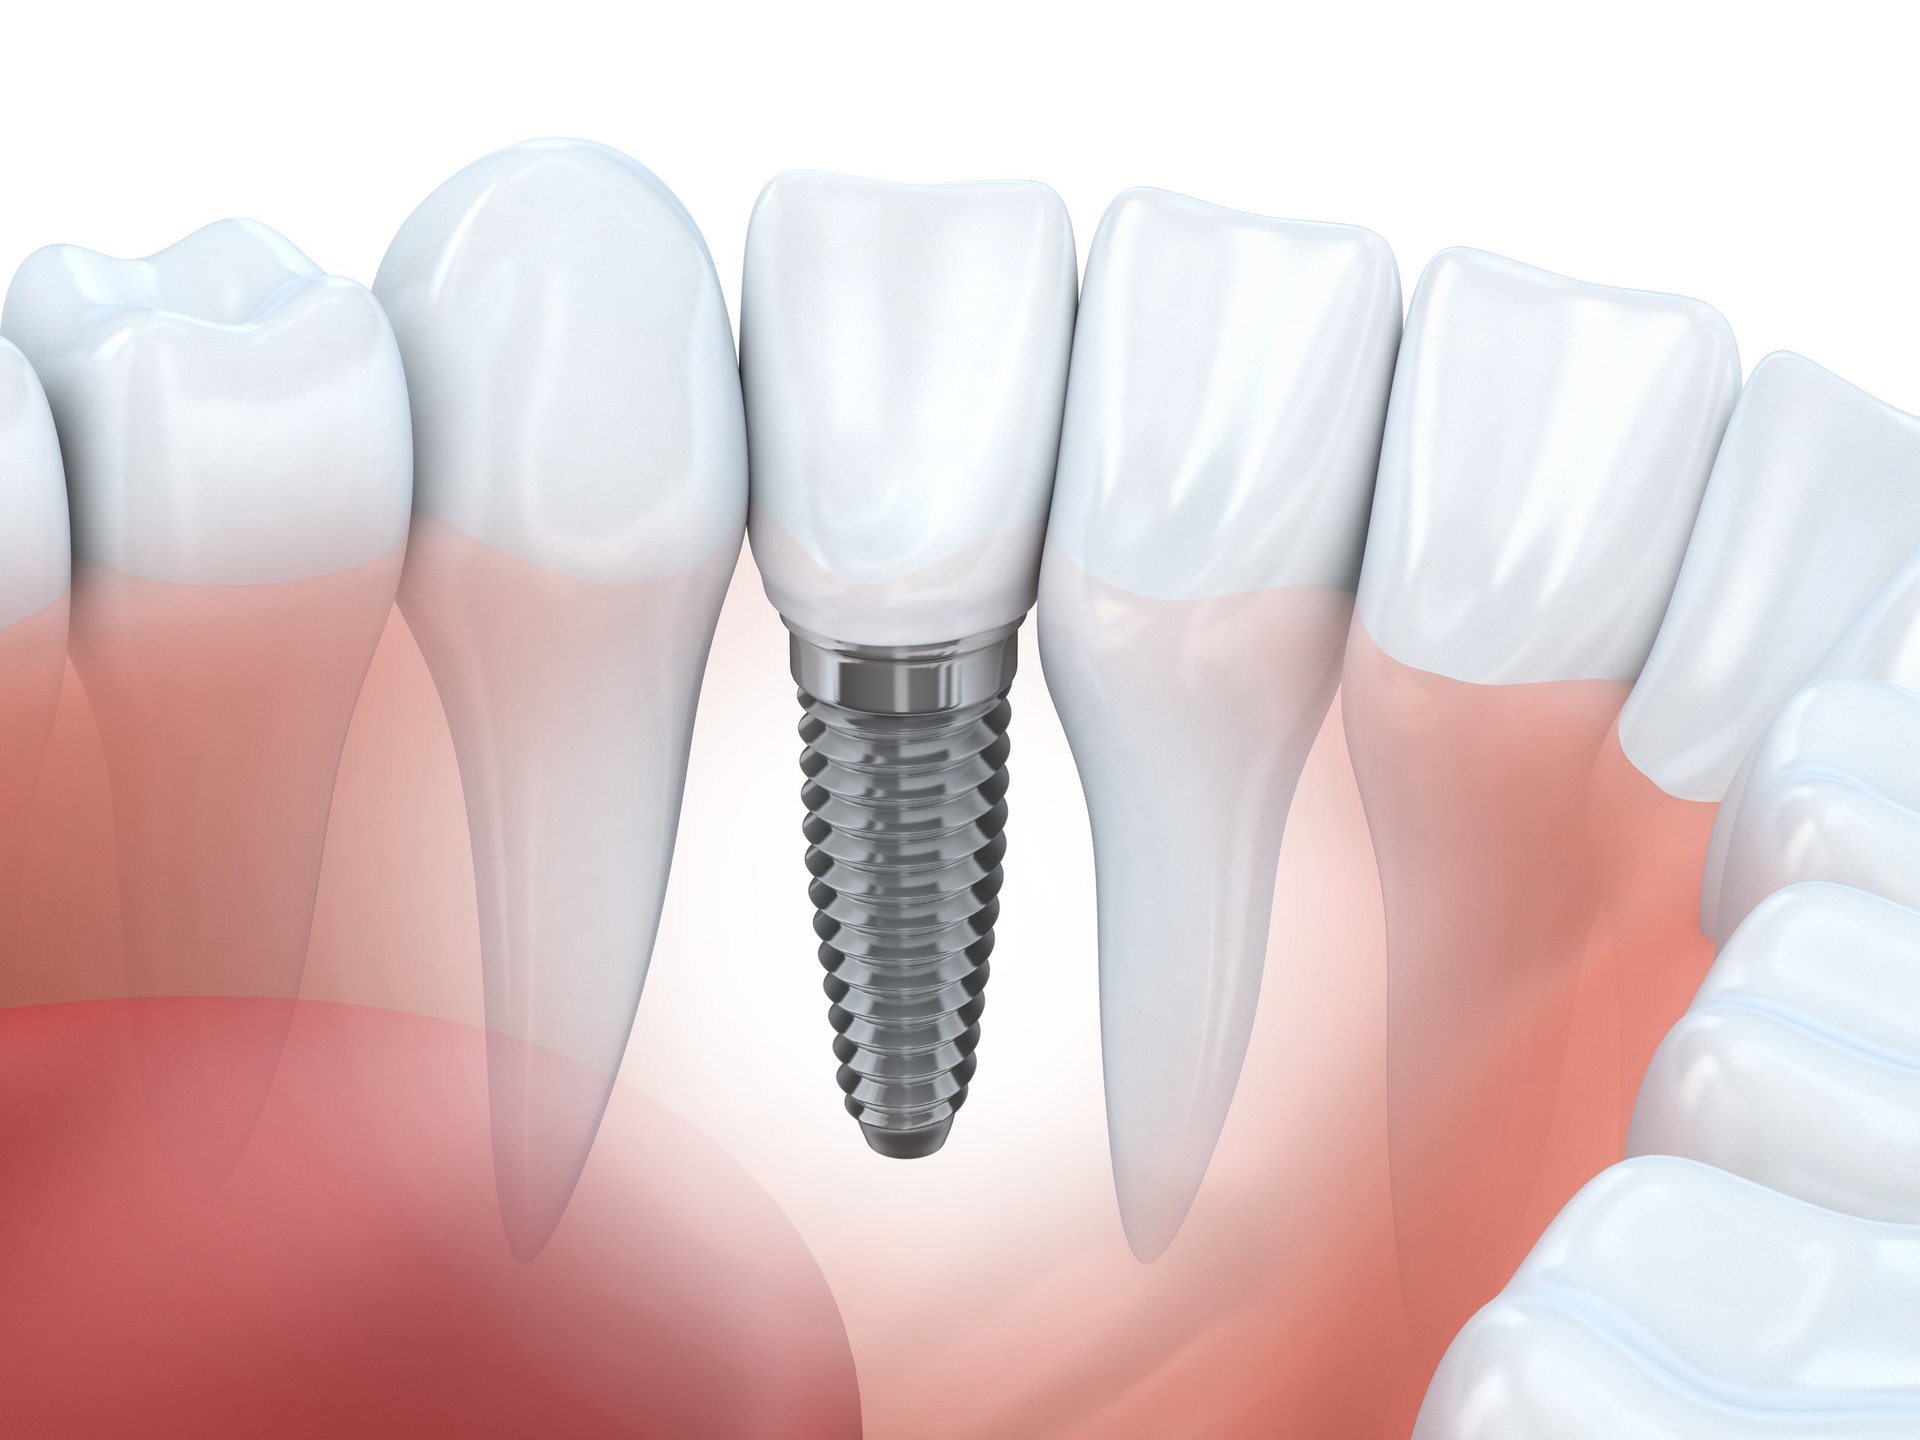 Фото: при дентальной имплантации не требуется стачивать рядом стоящие родные зубы